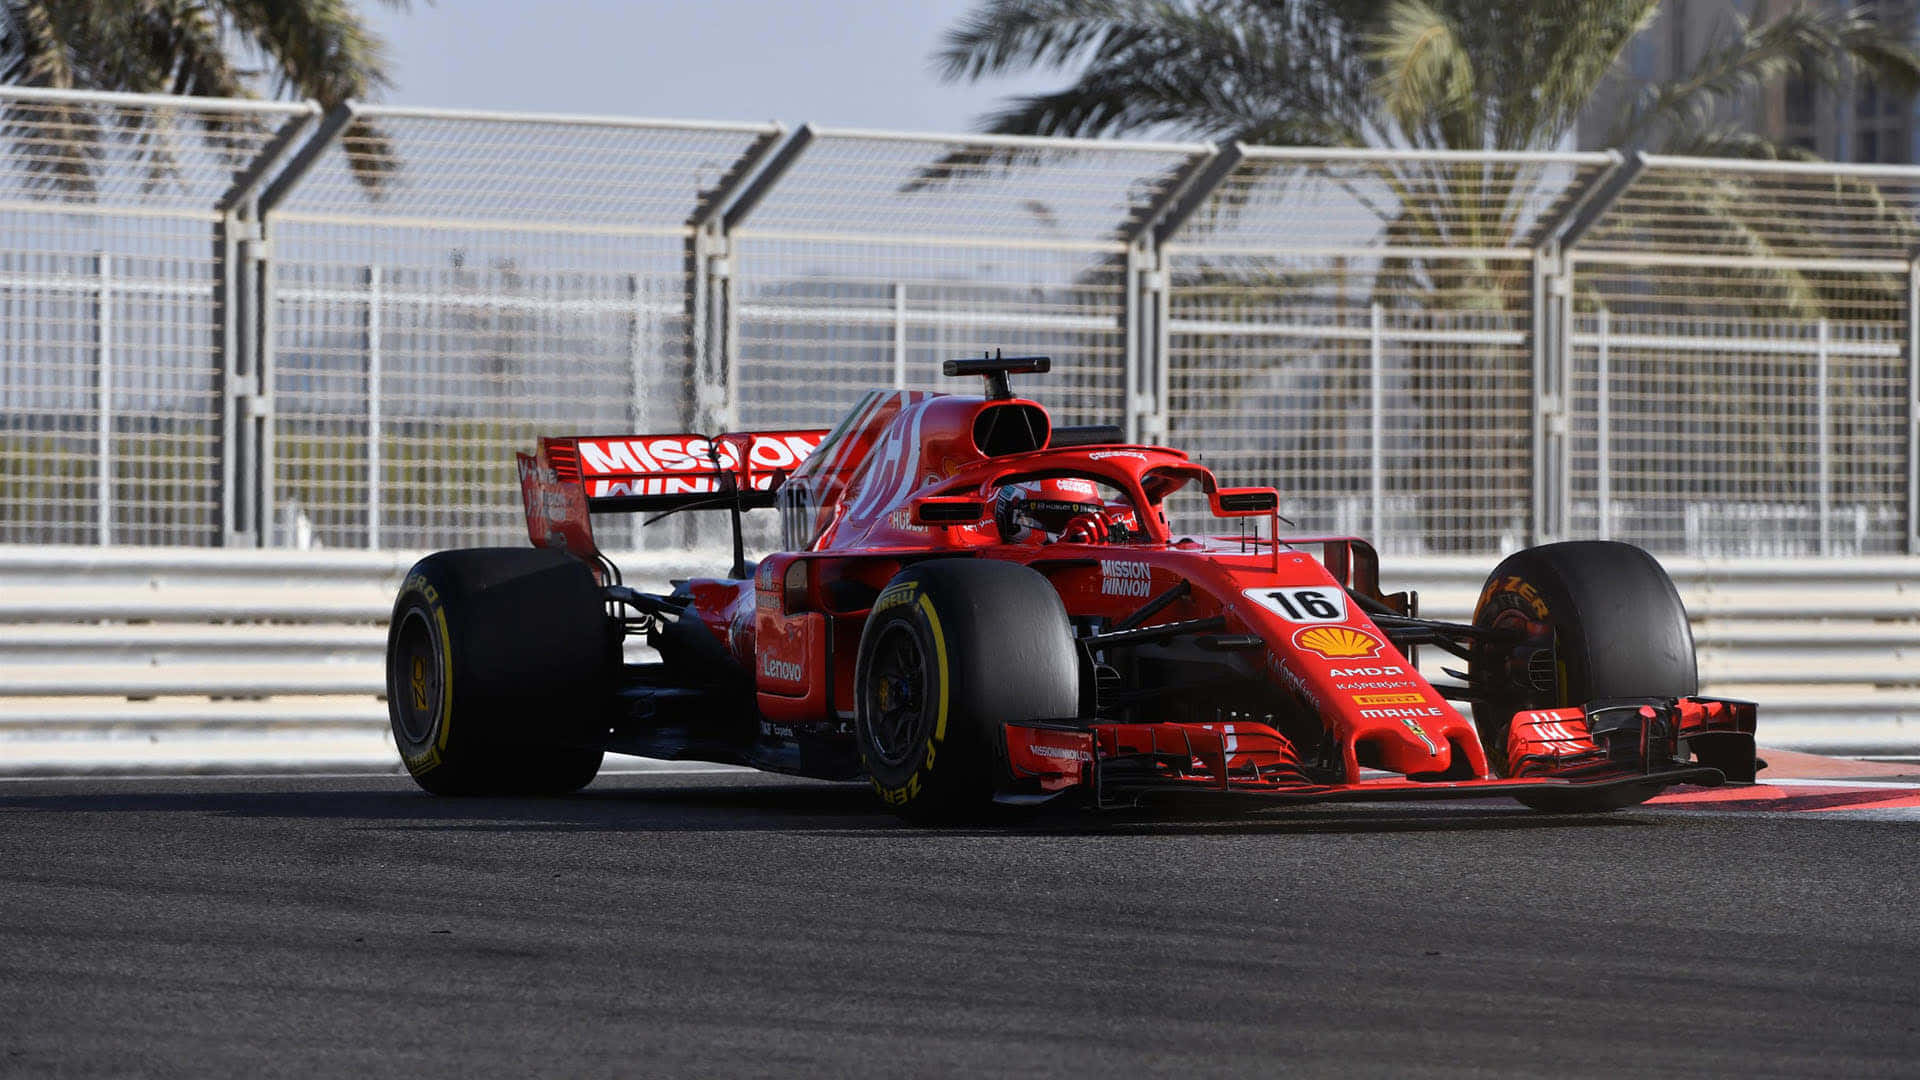 Fondode Pantalla En Hd Del Equipo Scuderia Ferrari Rojo De Fórmula 1 2019.